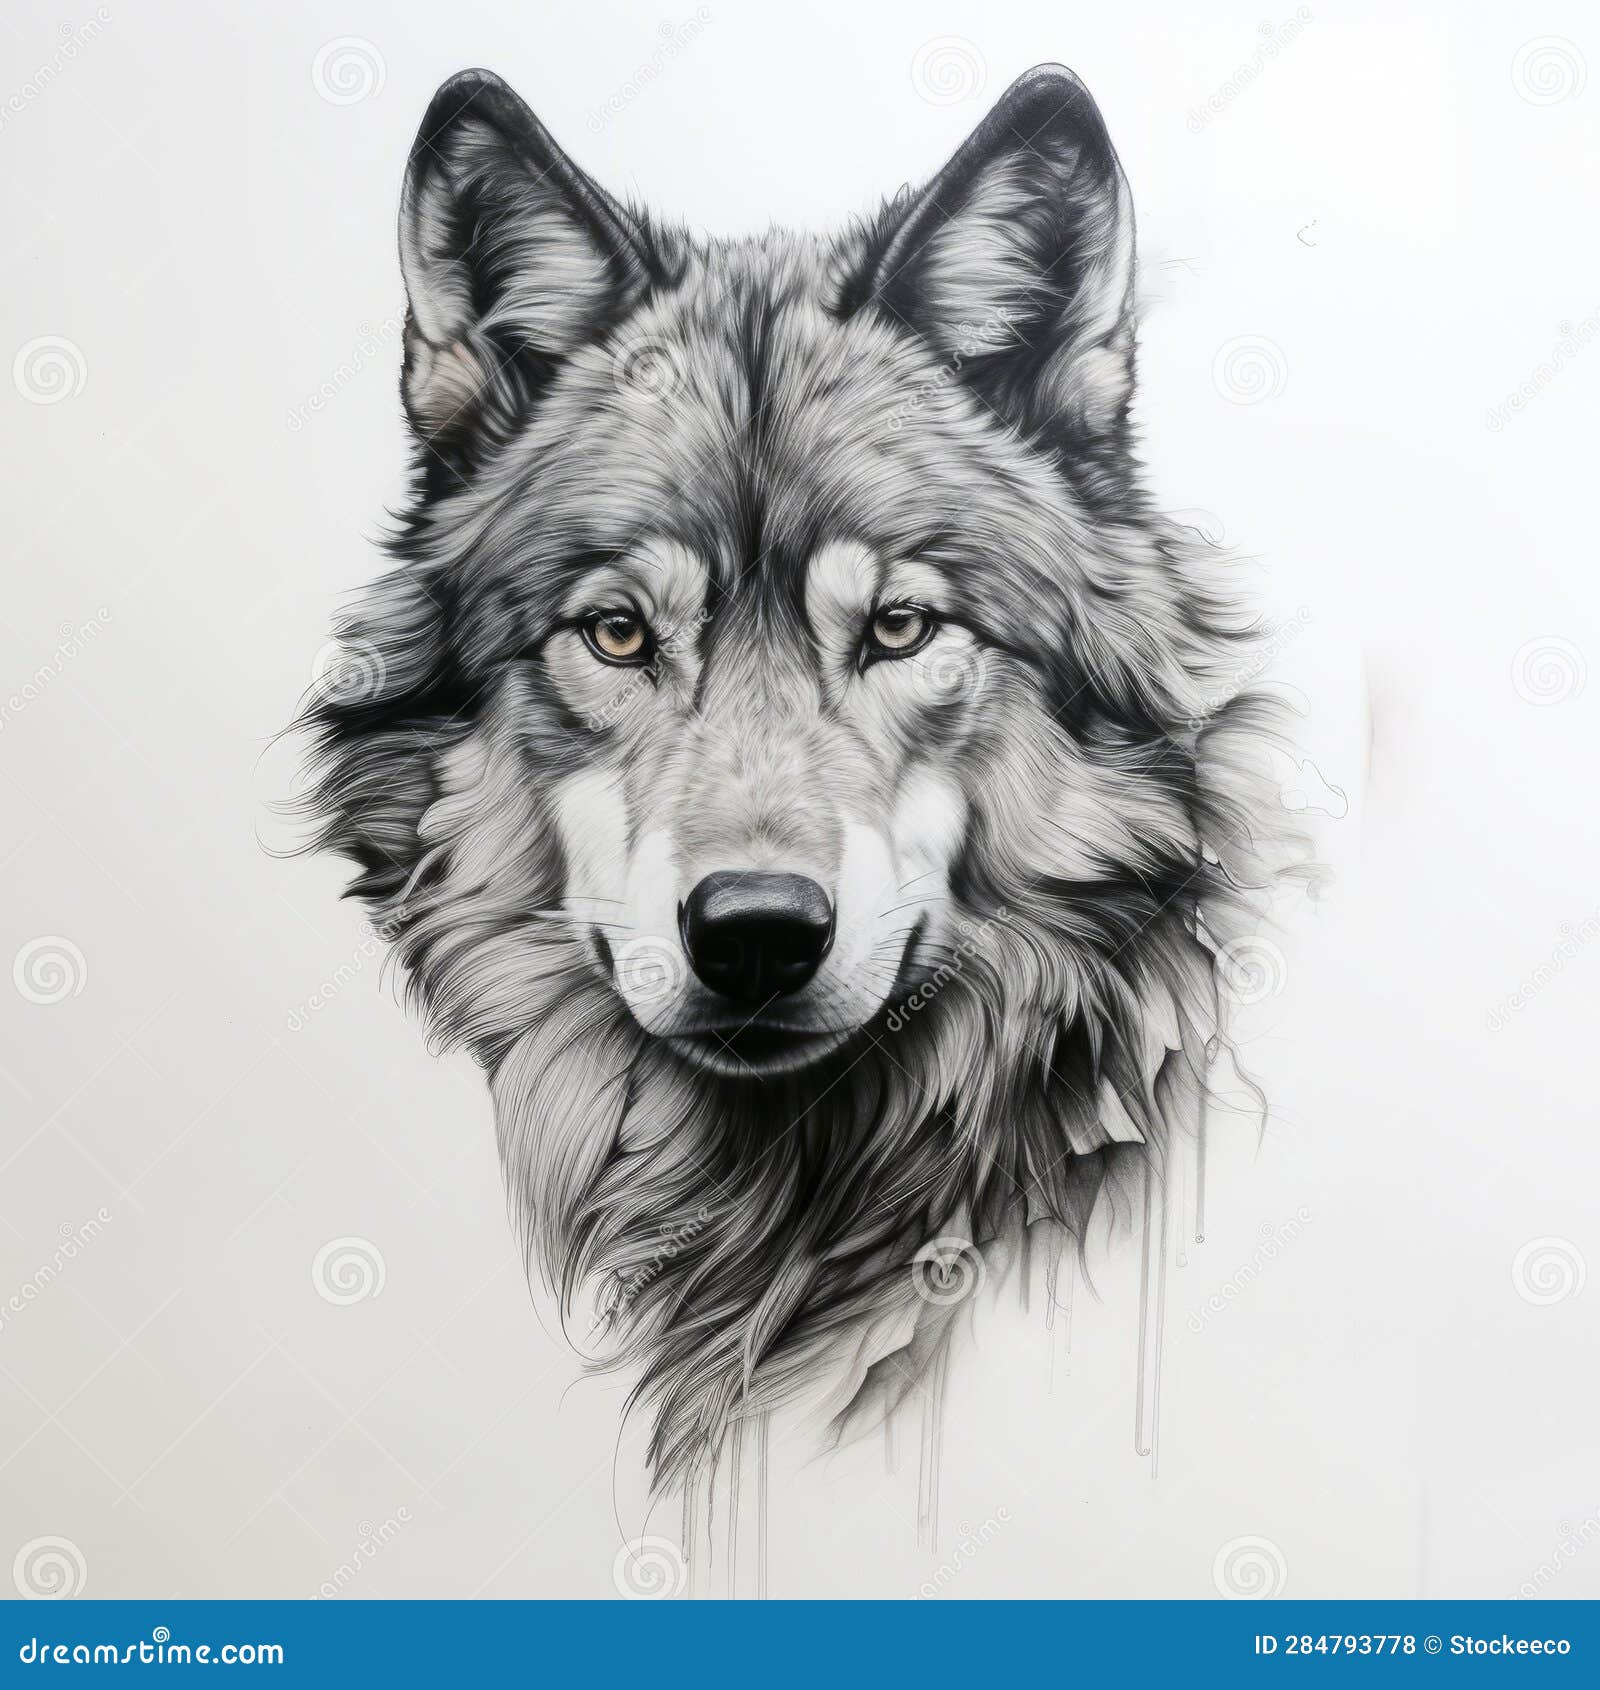 Realistic black and gray arm wolf tattoo stencil application tattoo a... |  TikTok